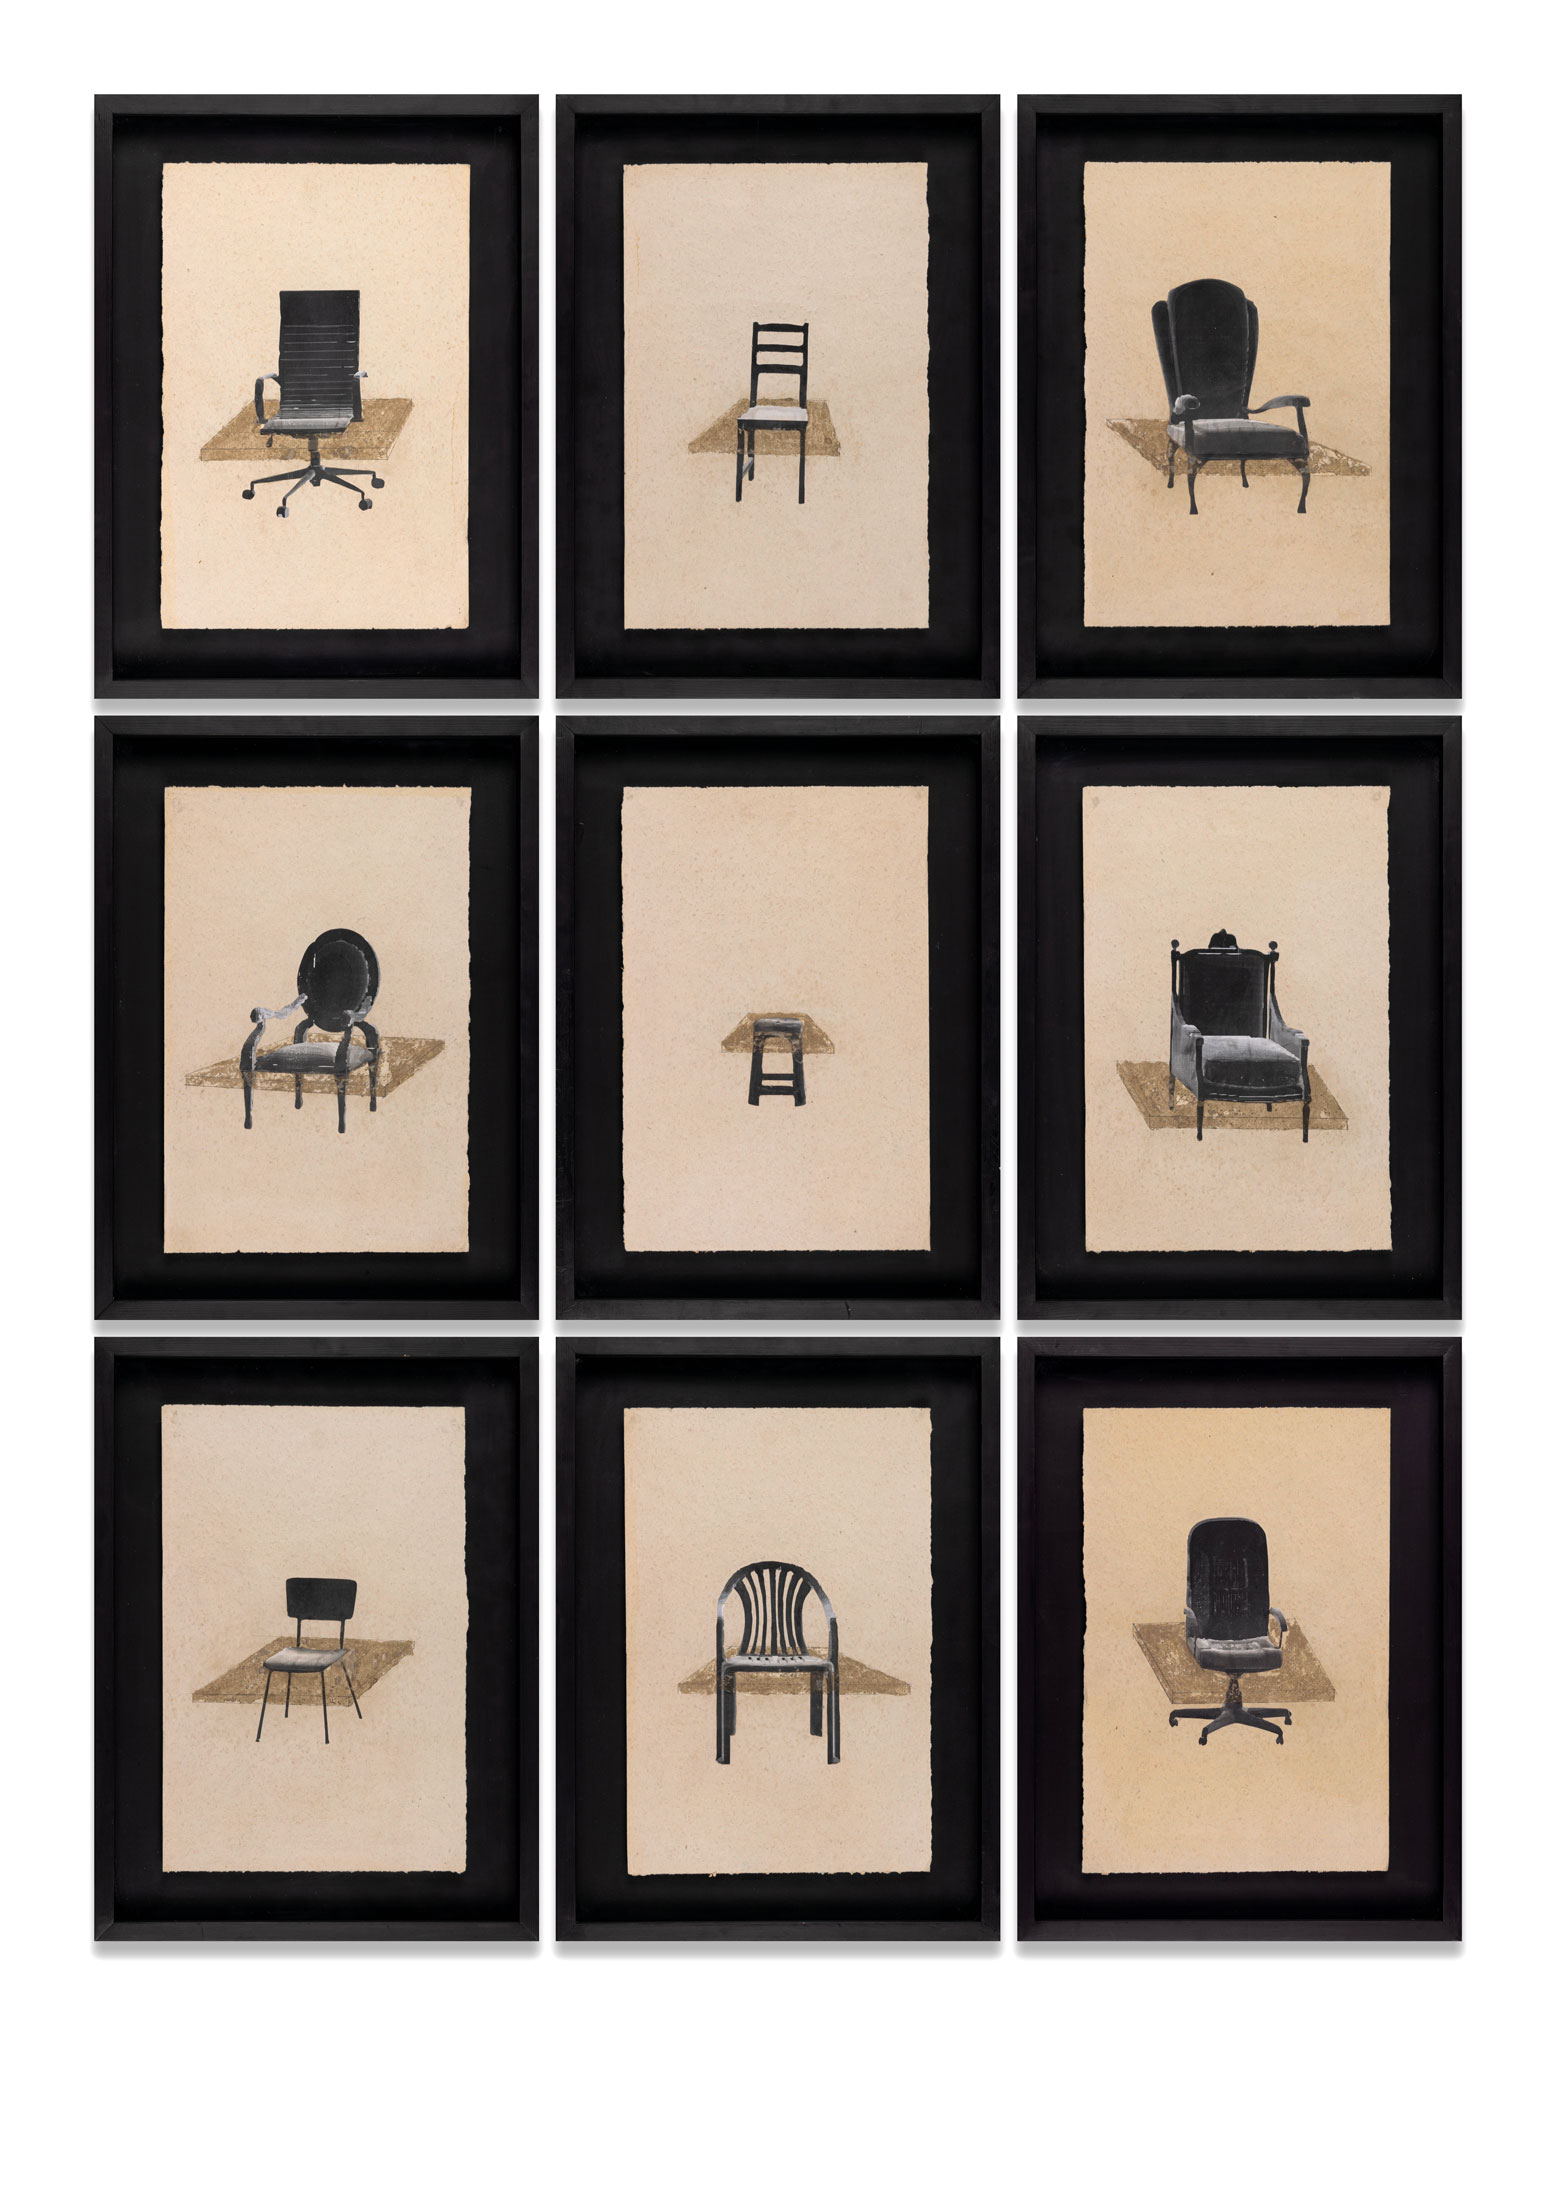 Études de chaises, d’équilibre et d’égalité, 2020
Composition de 9 pièces Technique mixte sur papier recyclé 40,5 x 27 cm chacune